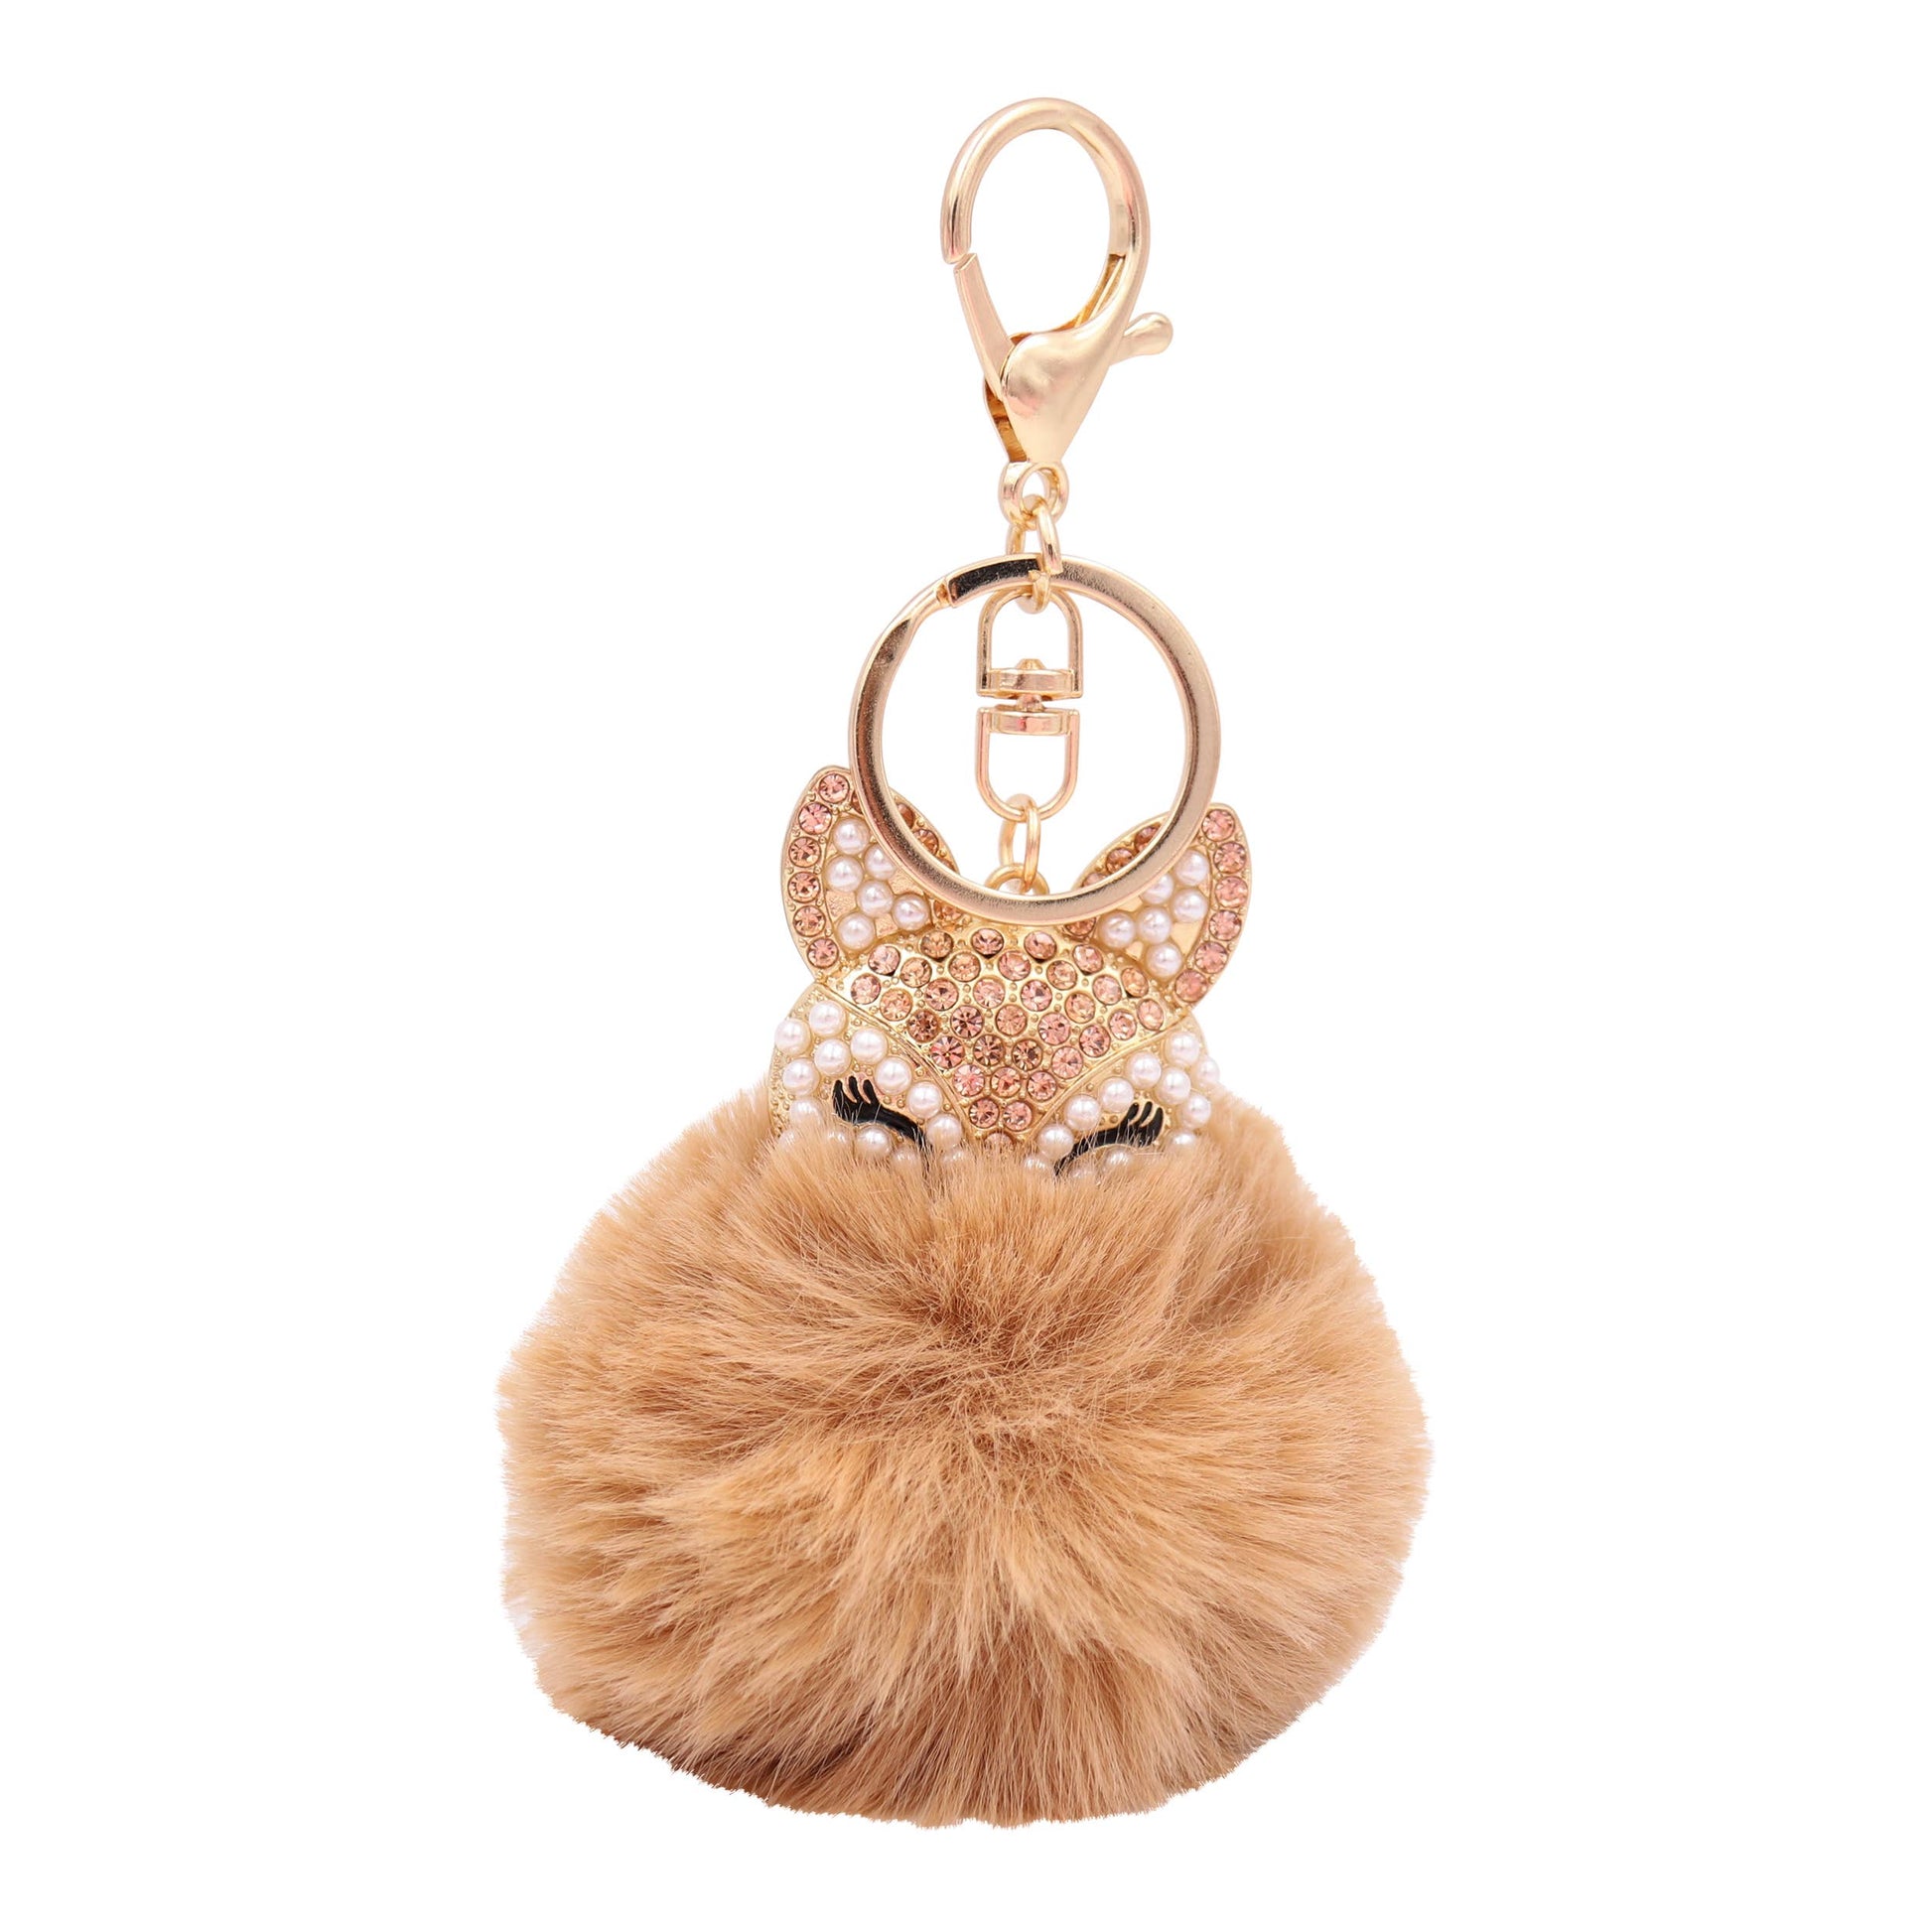 Image of Real Sic Tan Faux Fur Fuzzy Animal Fox Pom Pom Key chain - Fox Kechain